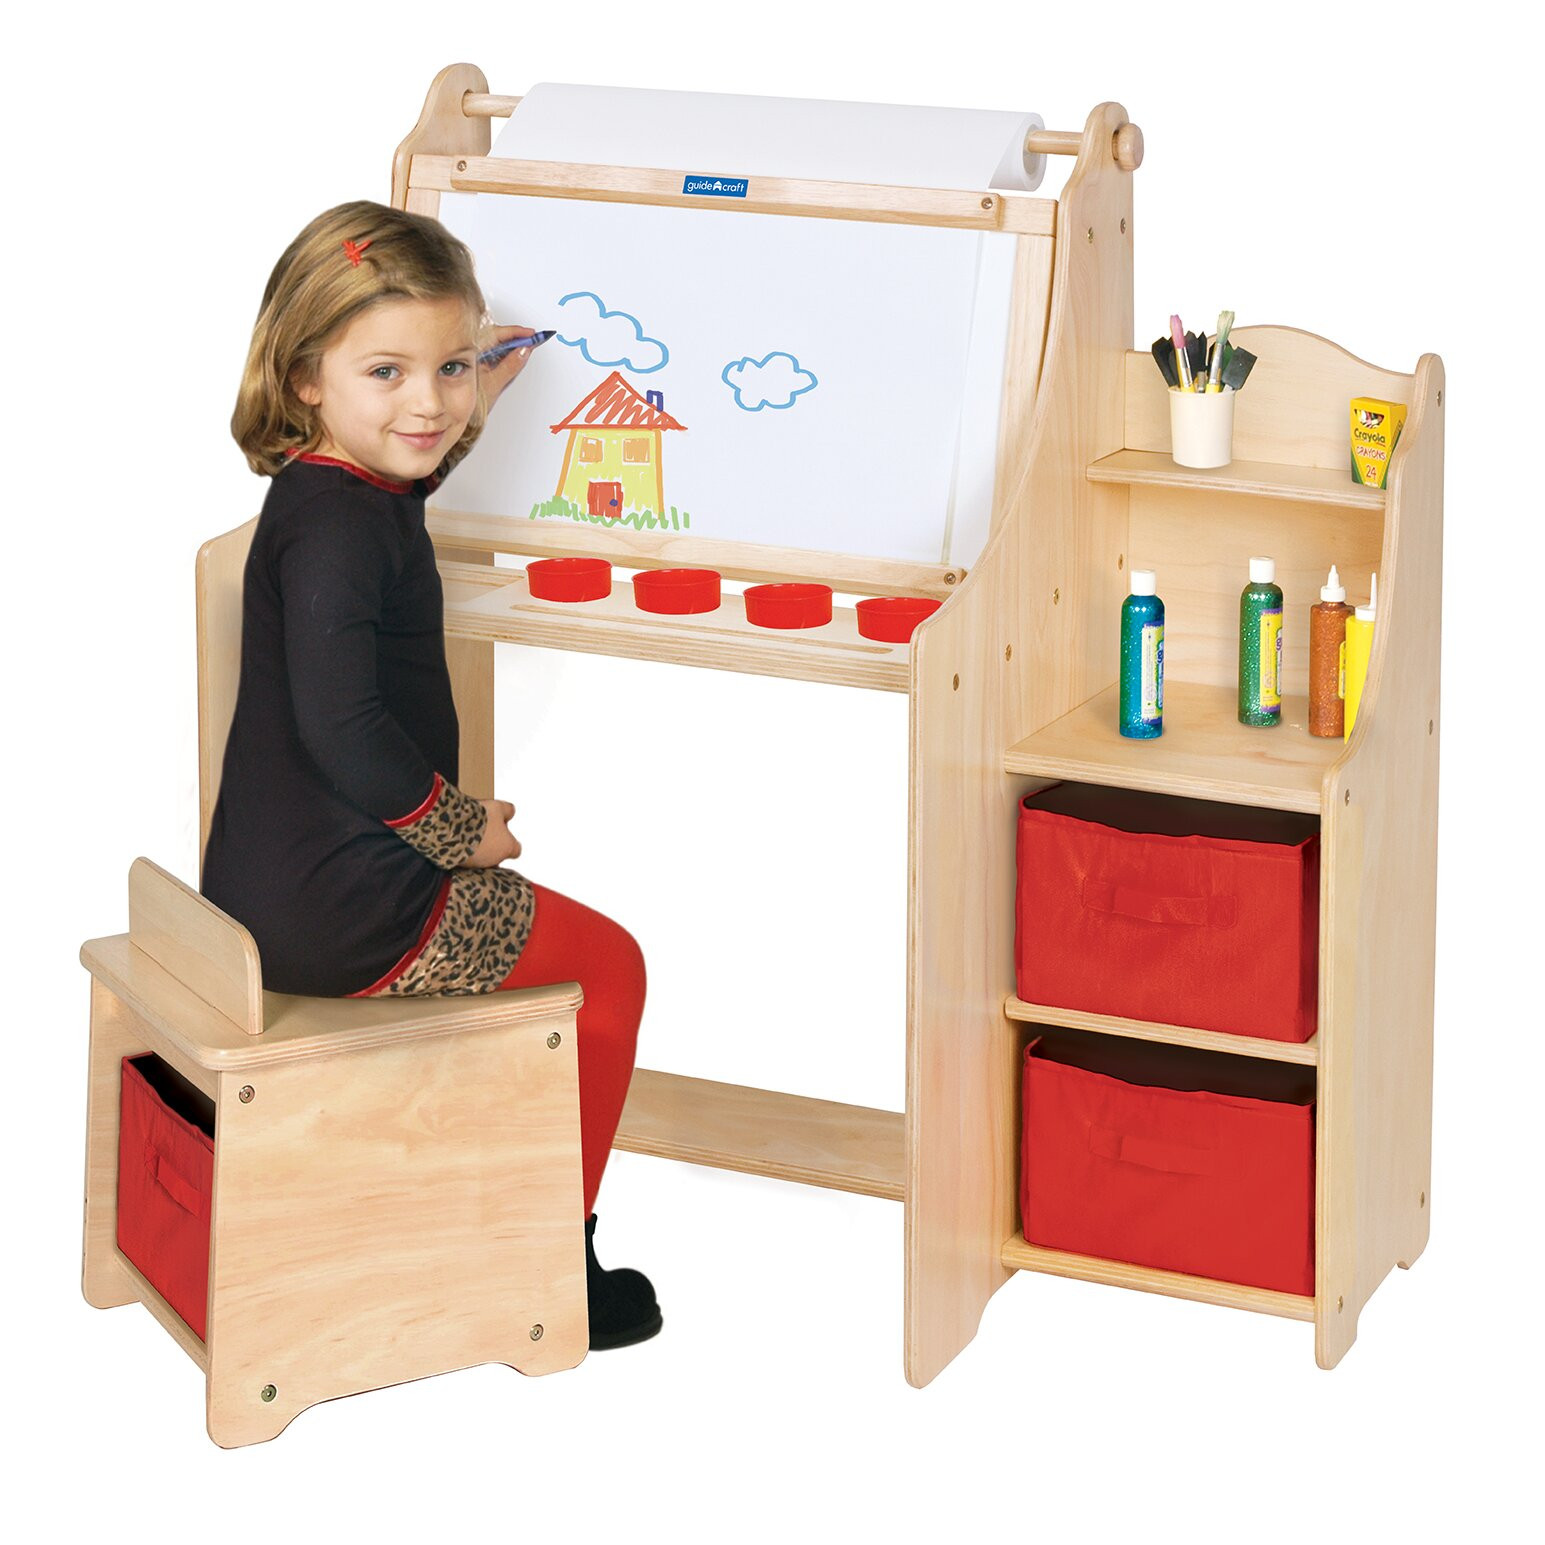 Kids Art Desk With Storage
 Guidecraft Art Equipment 36" W Art Desk Set with Storage